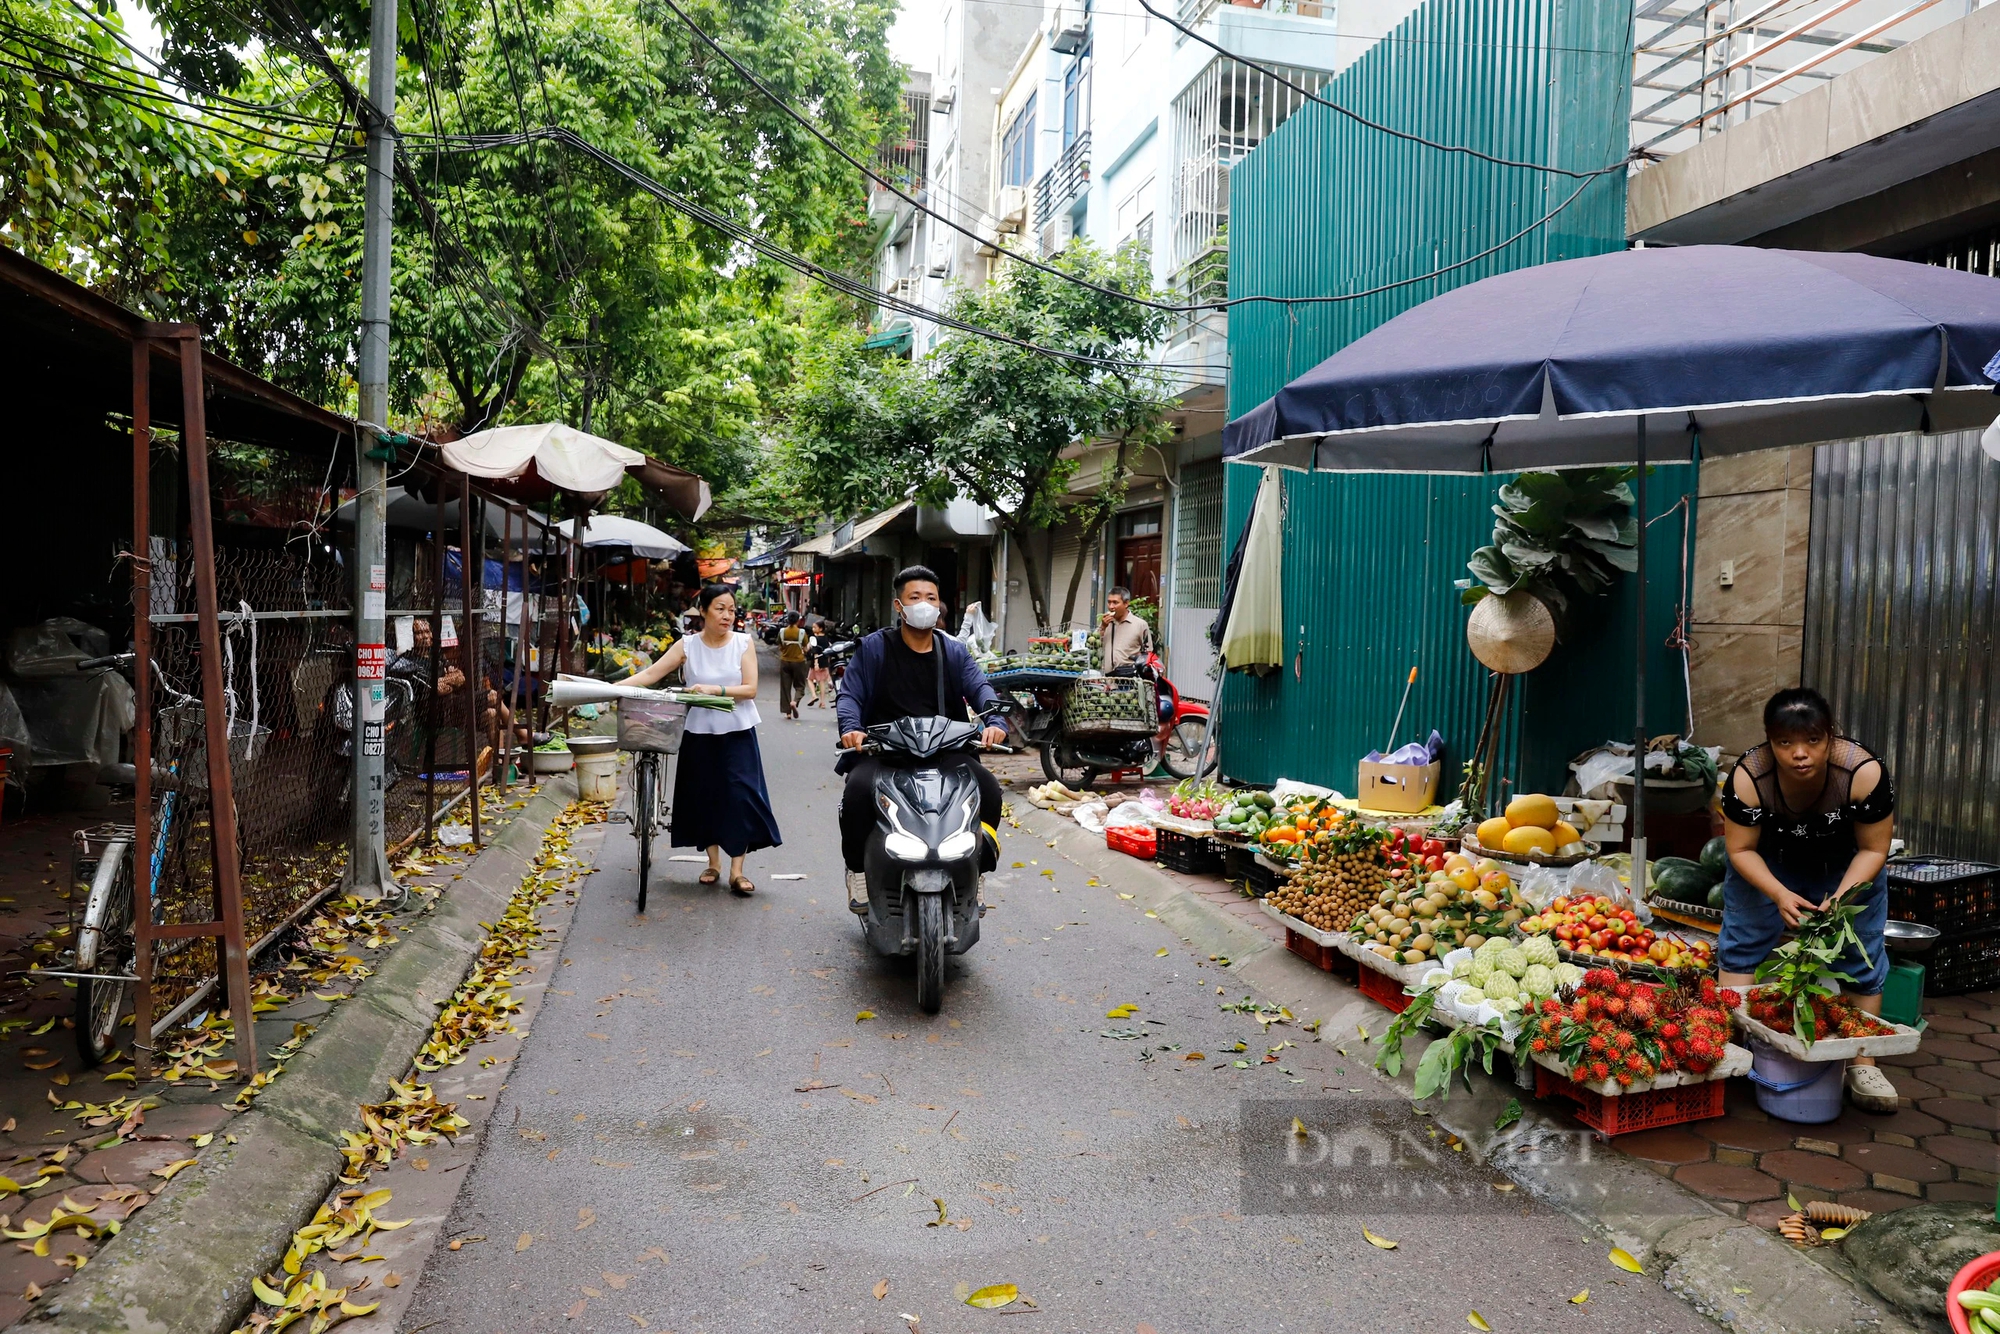 Chợ bỏ hoang ở Hà Nội: Chợ 18 tỷ xây xong "đắp chiếu", tiểu thương chật vật buôn bán sau lớp hàng rào- Ảnh 8.